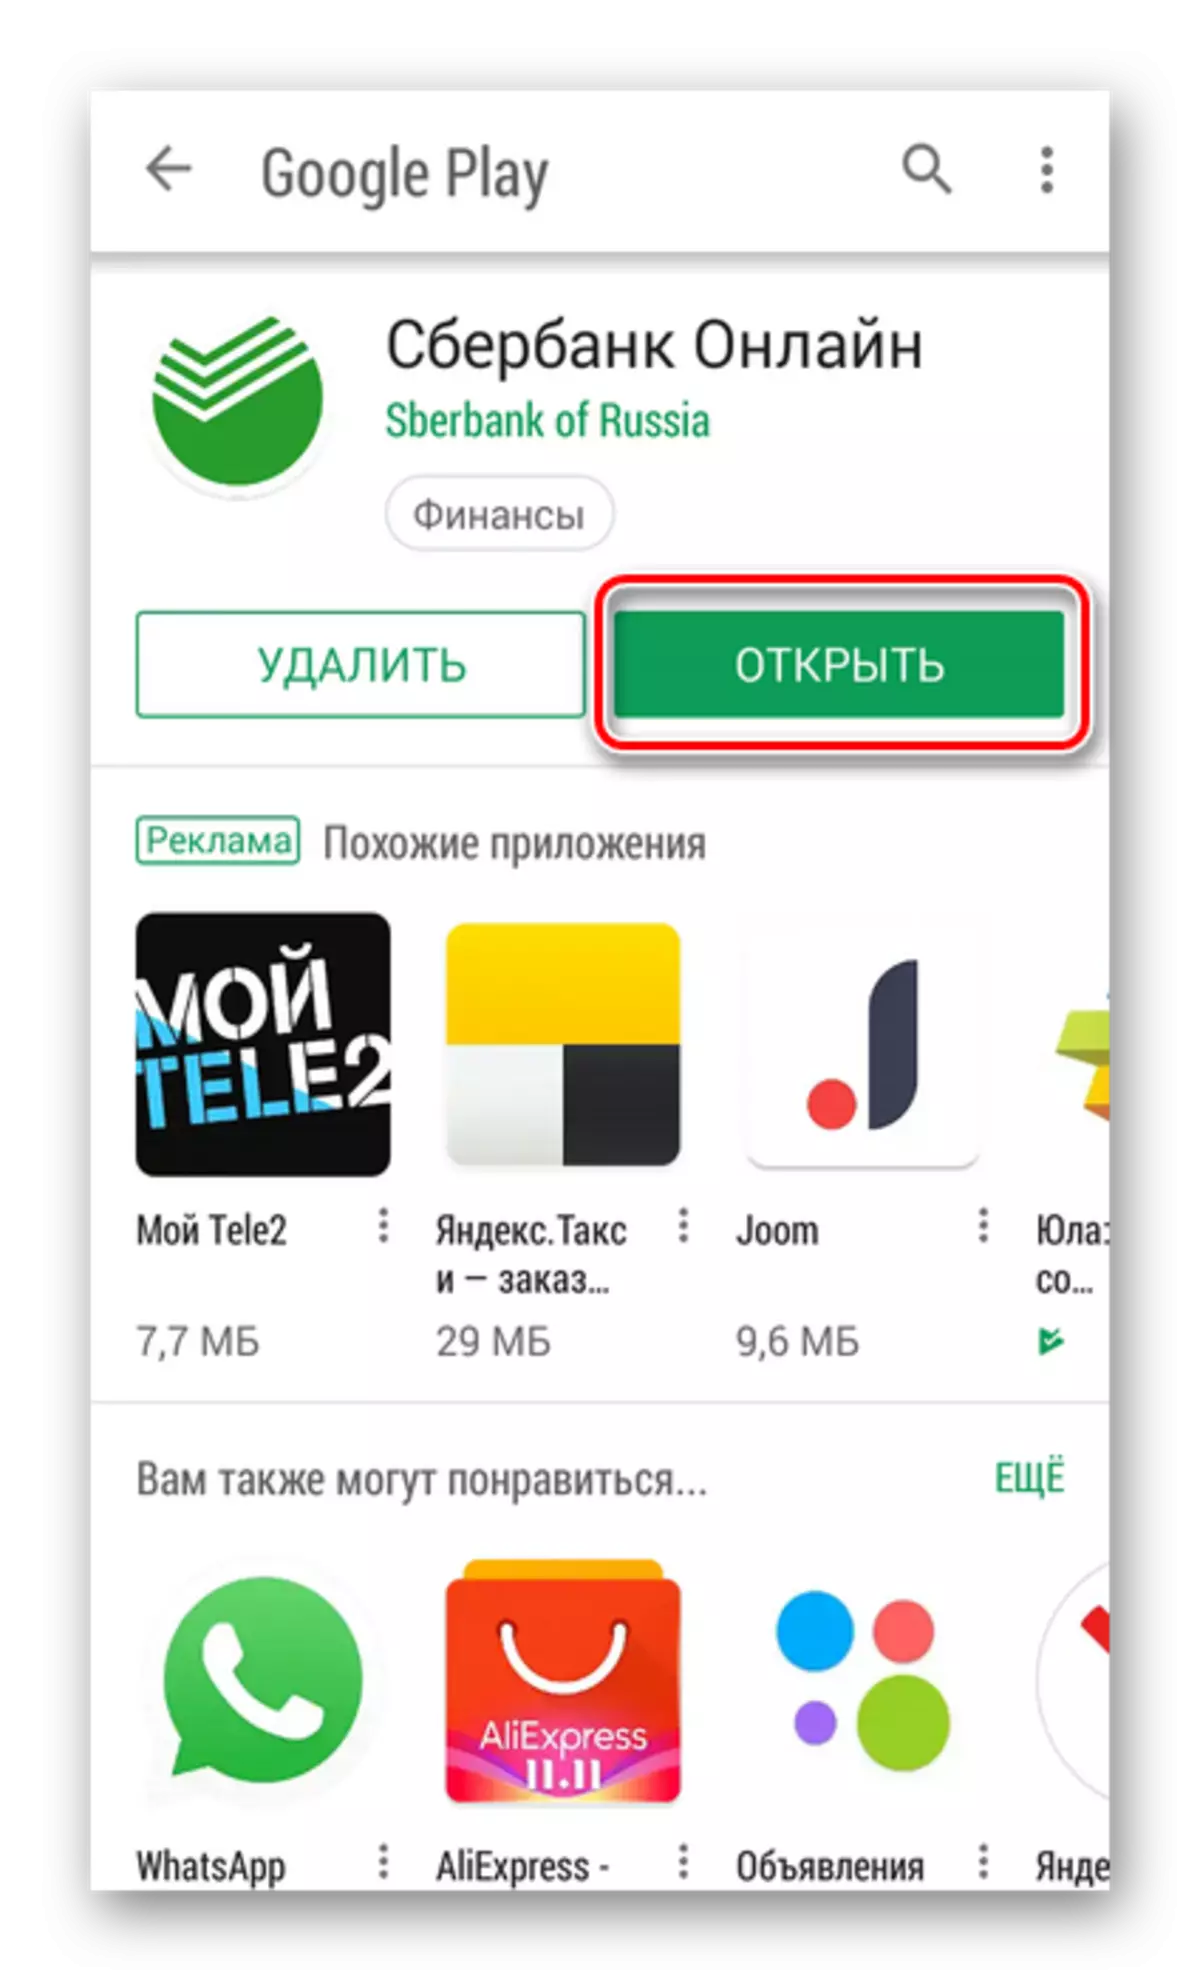 Iepenje de Sberbank-applikaasje online